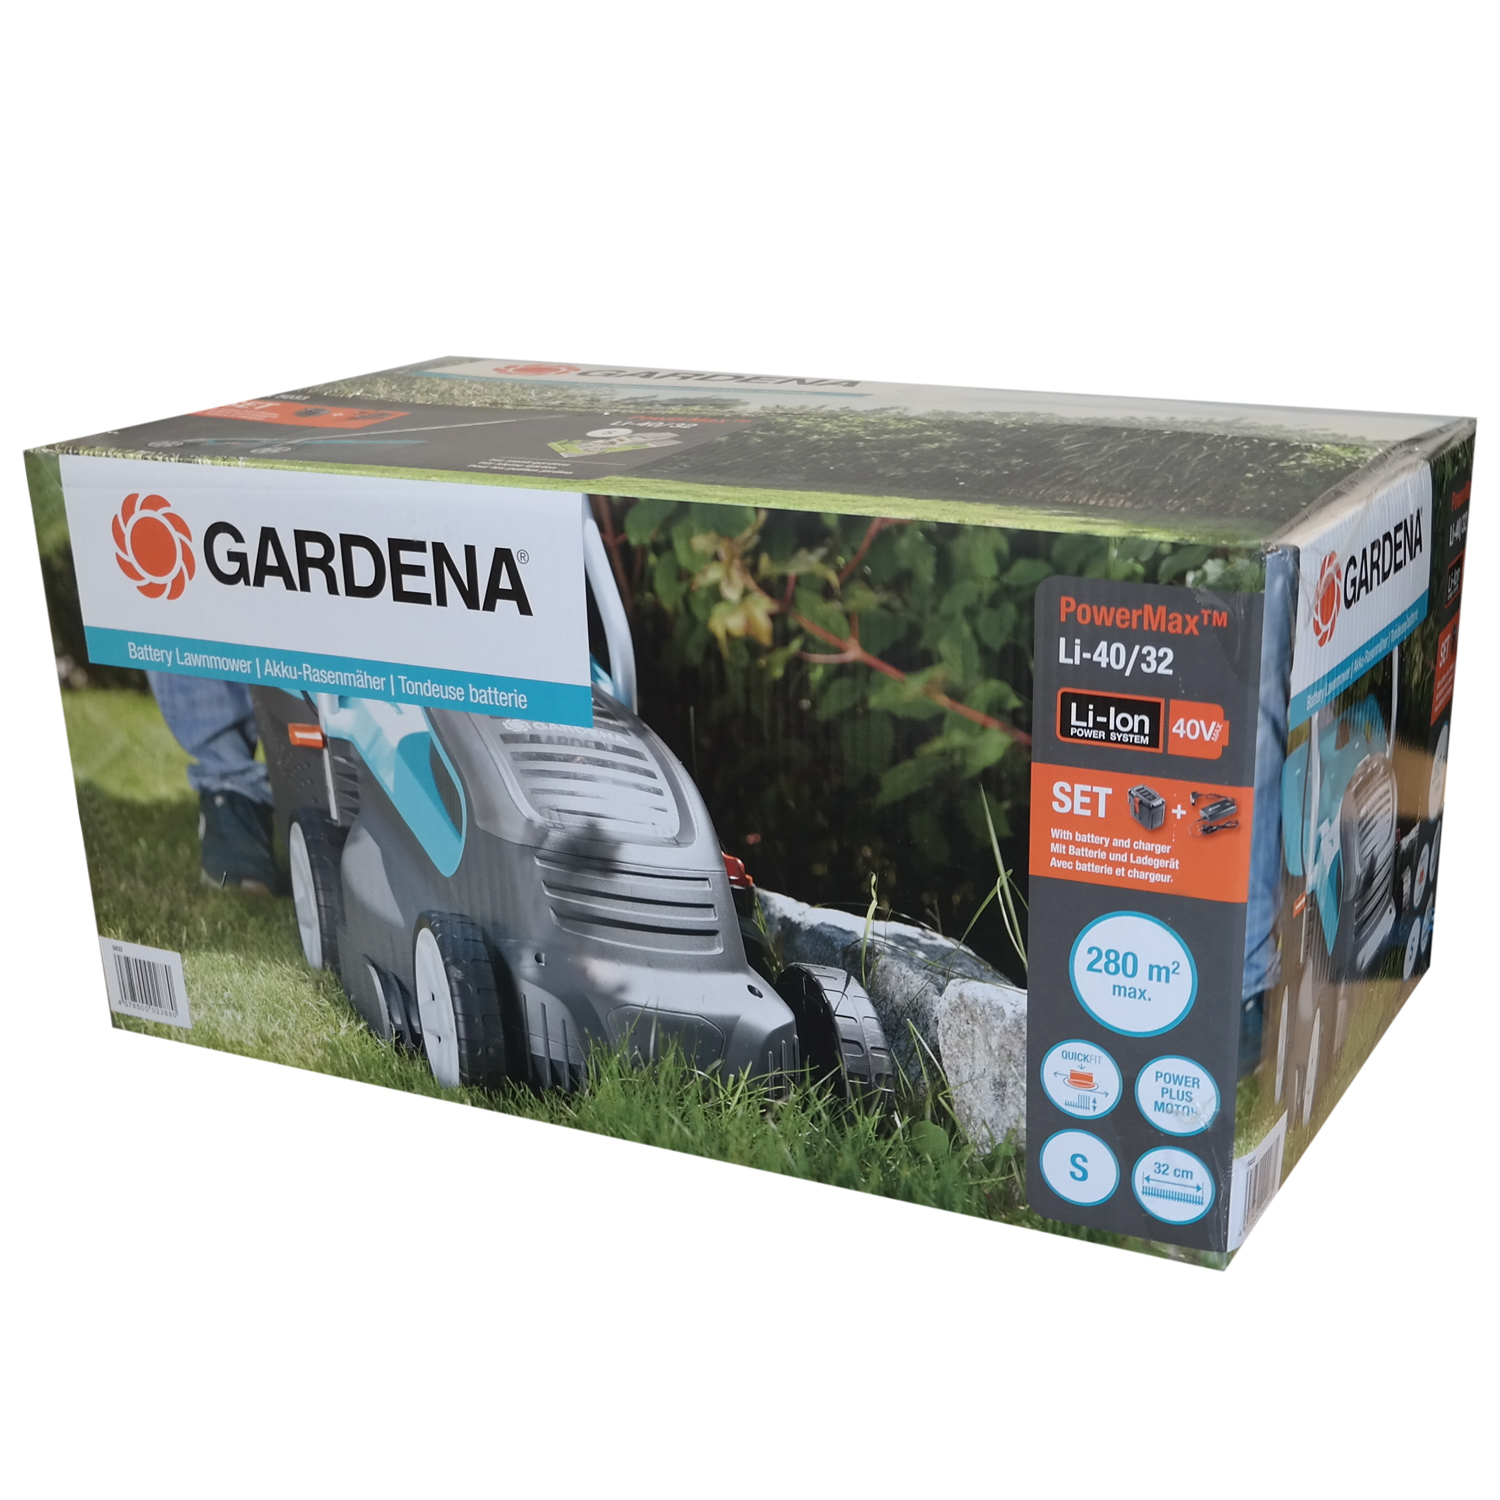 Gardena PowerMax™ Li-40/32 Akku-Rasenmäher inkl. Akku